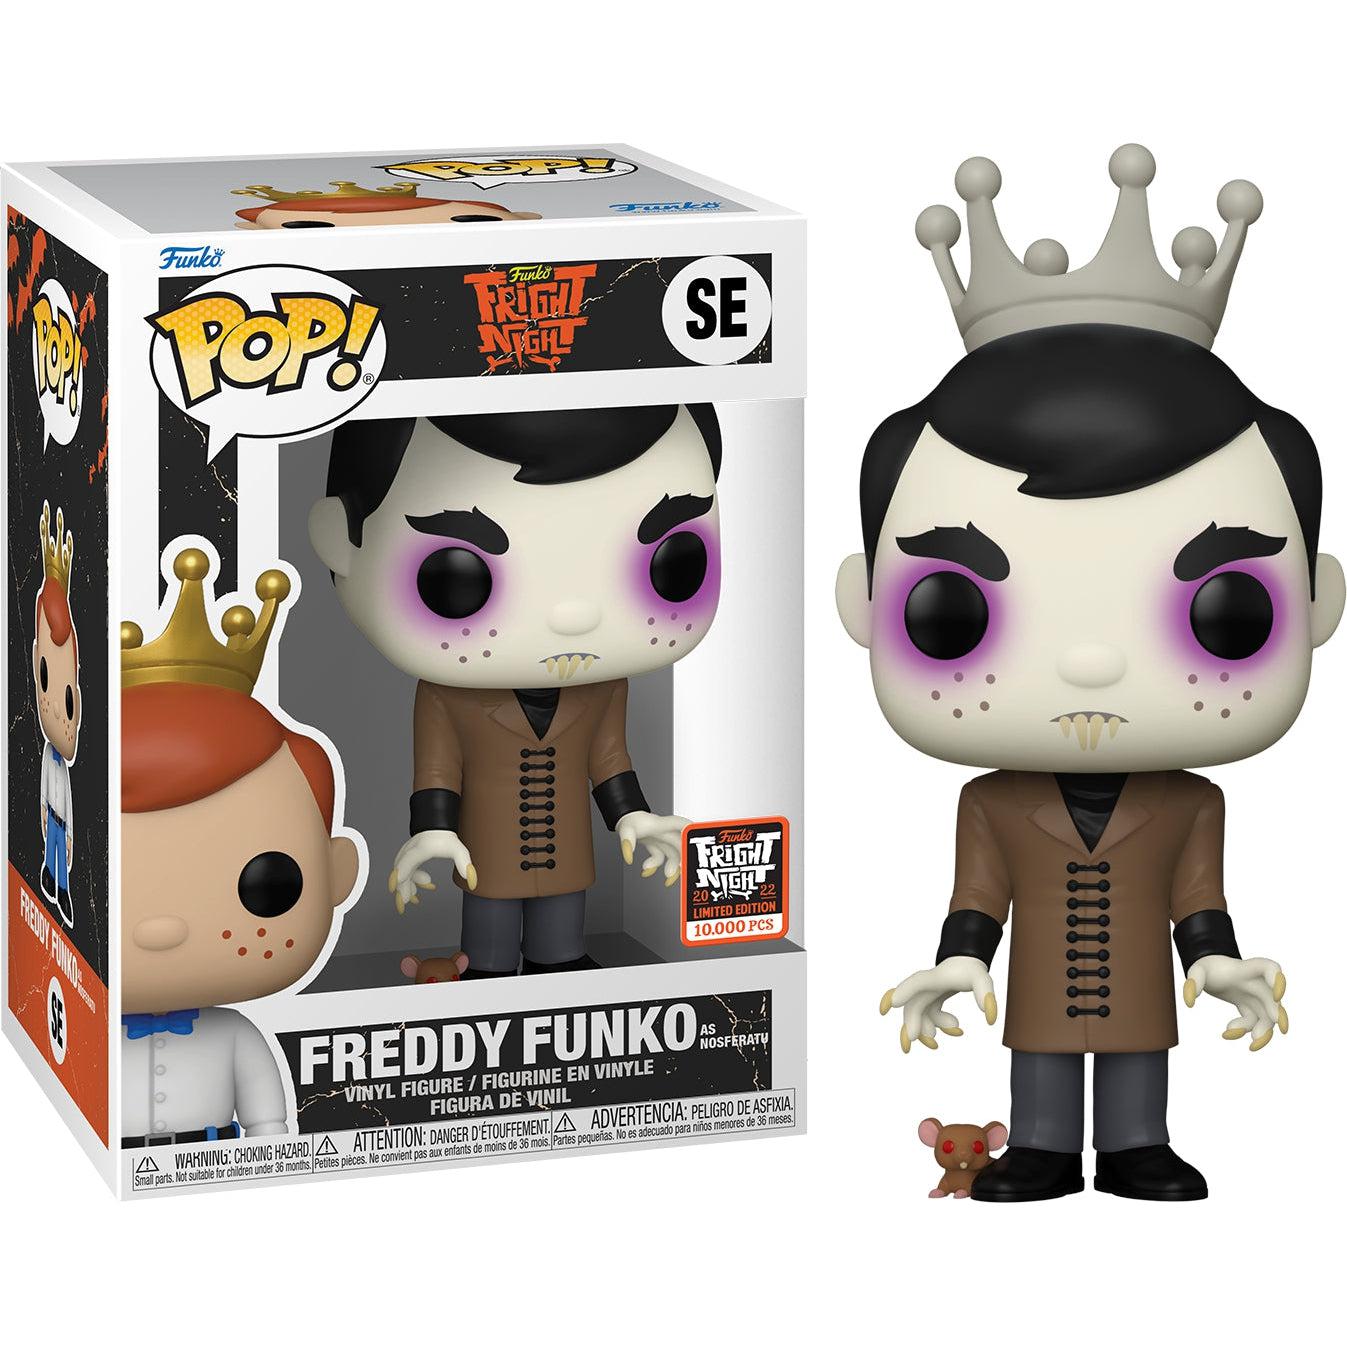 Funko Pop - Freddy Funko as Nosferatu SE - Fright Night 2022 LE 10000